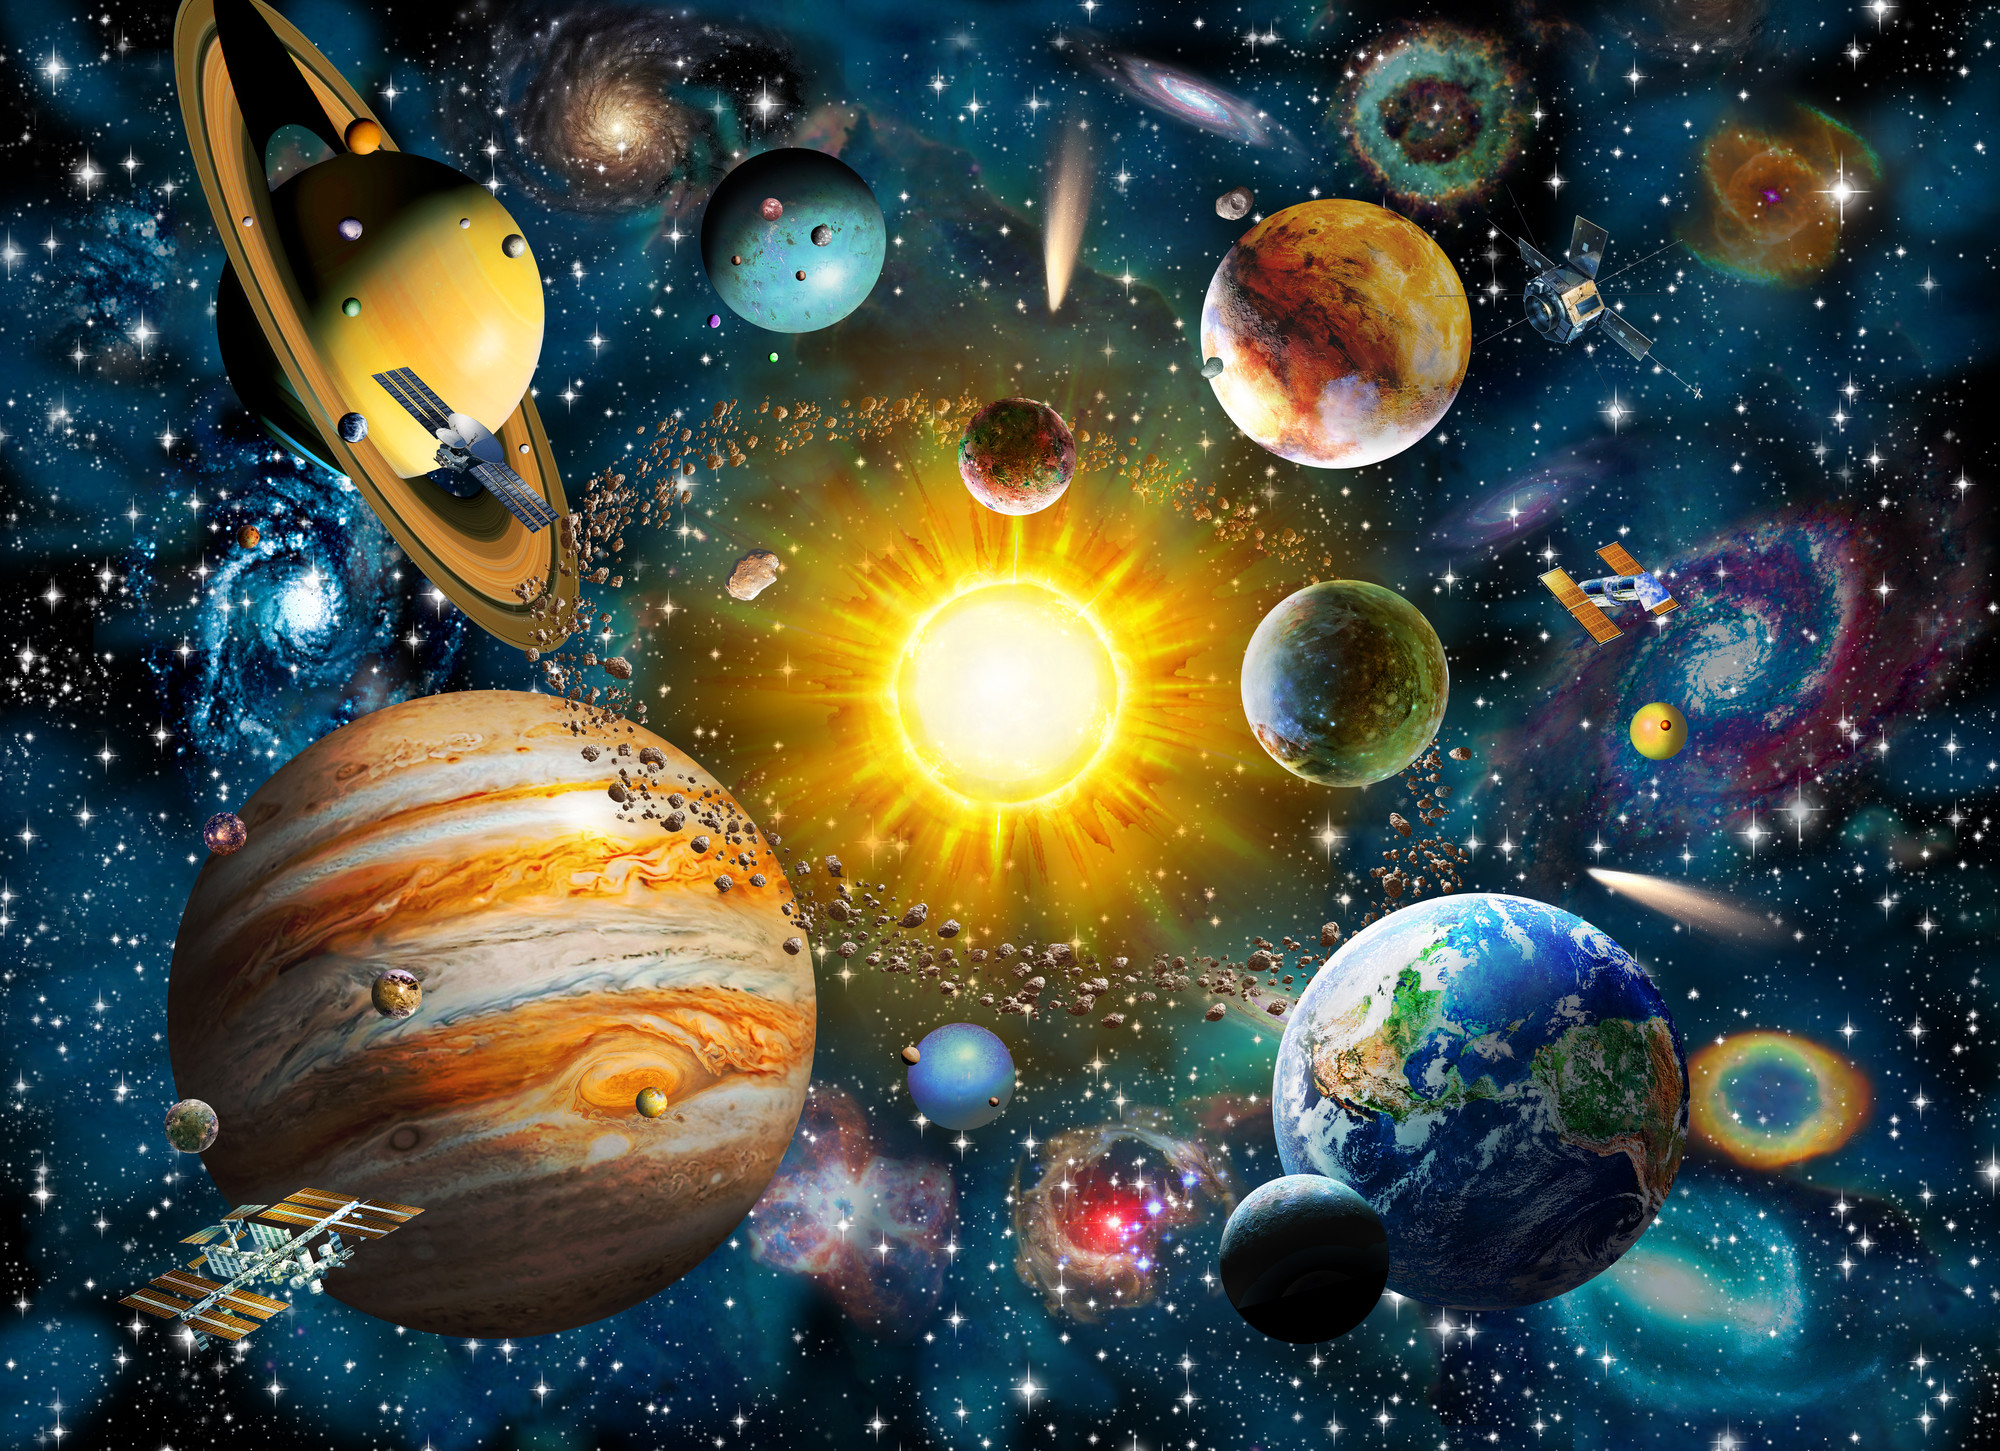 tapete des sonnensystems,weltraum,platz,planet,astronomisches objekt,universum